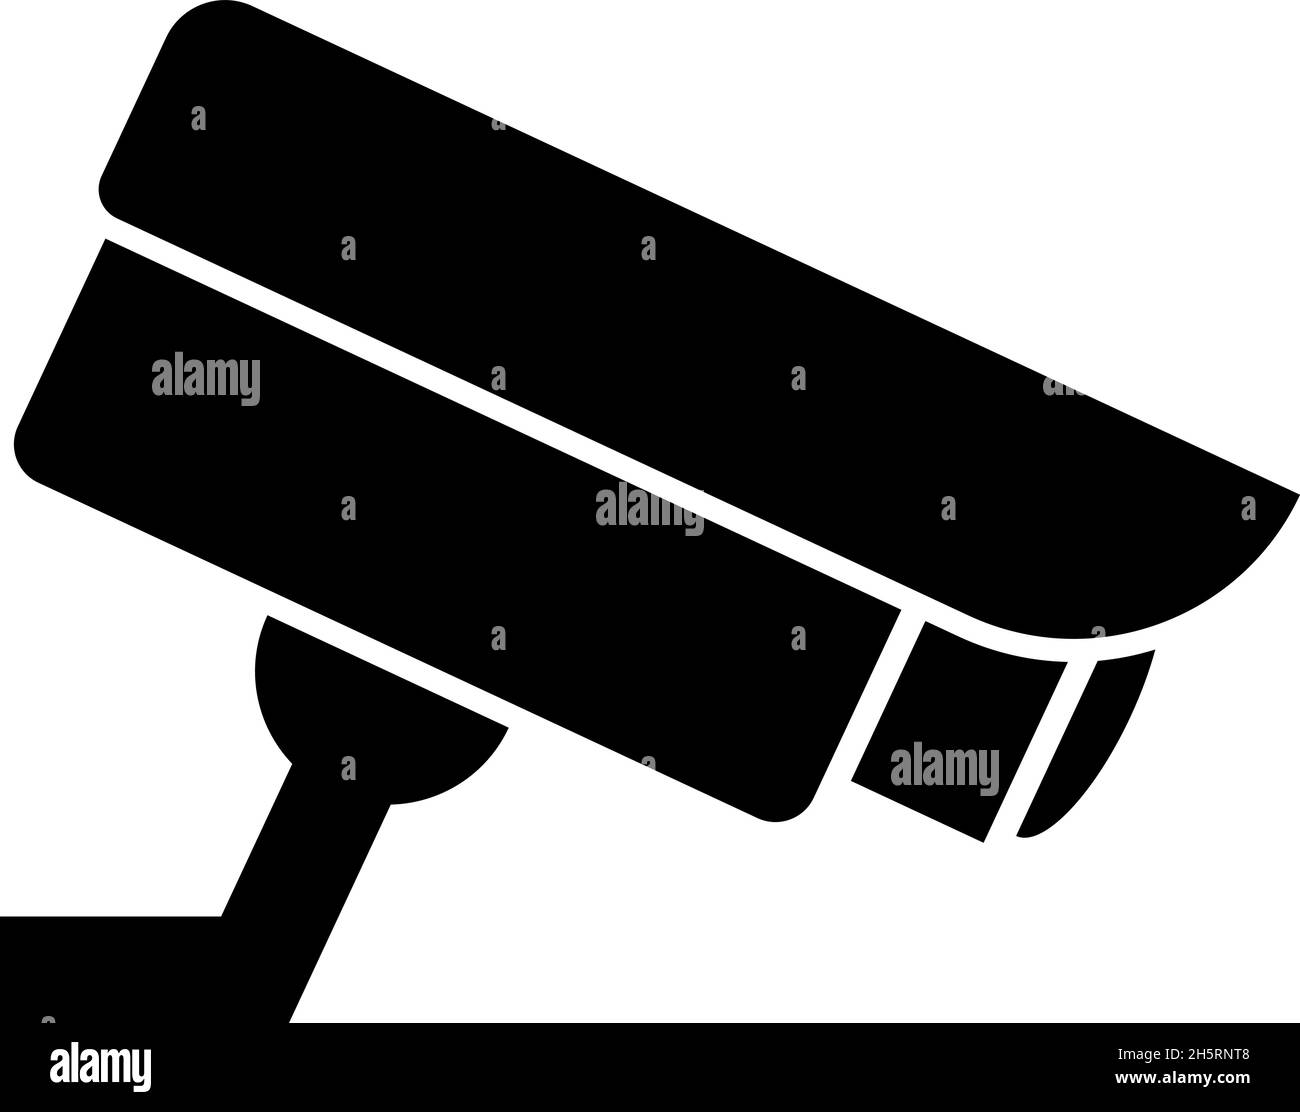 Symbolvektor der Überwachungskamera. Sicherheitskonzept mit flacher Abbildung Stock Vektor